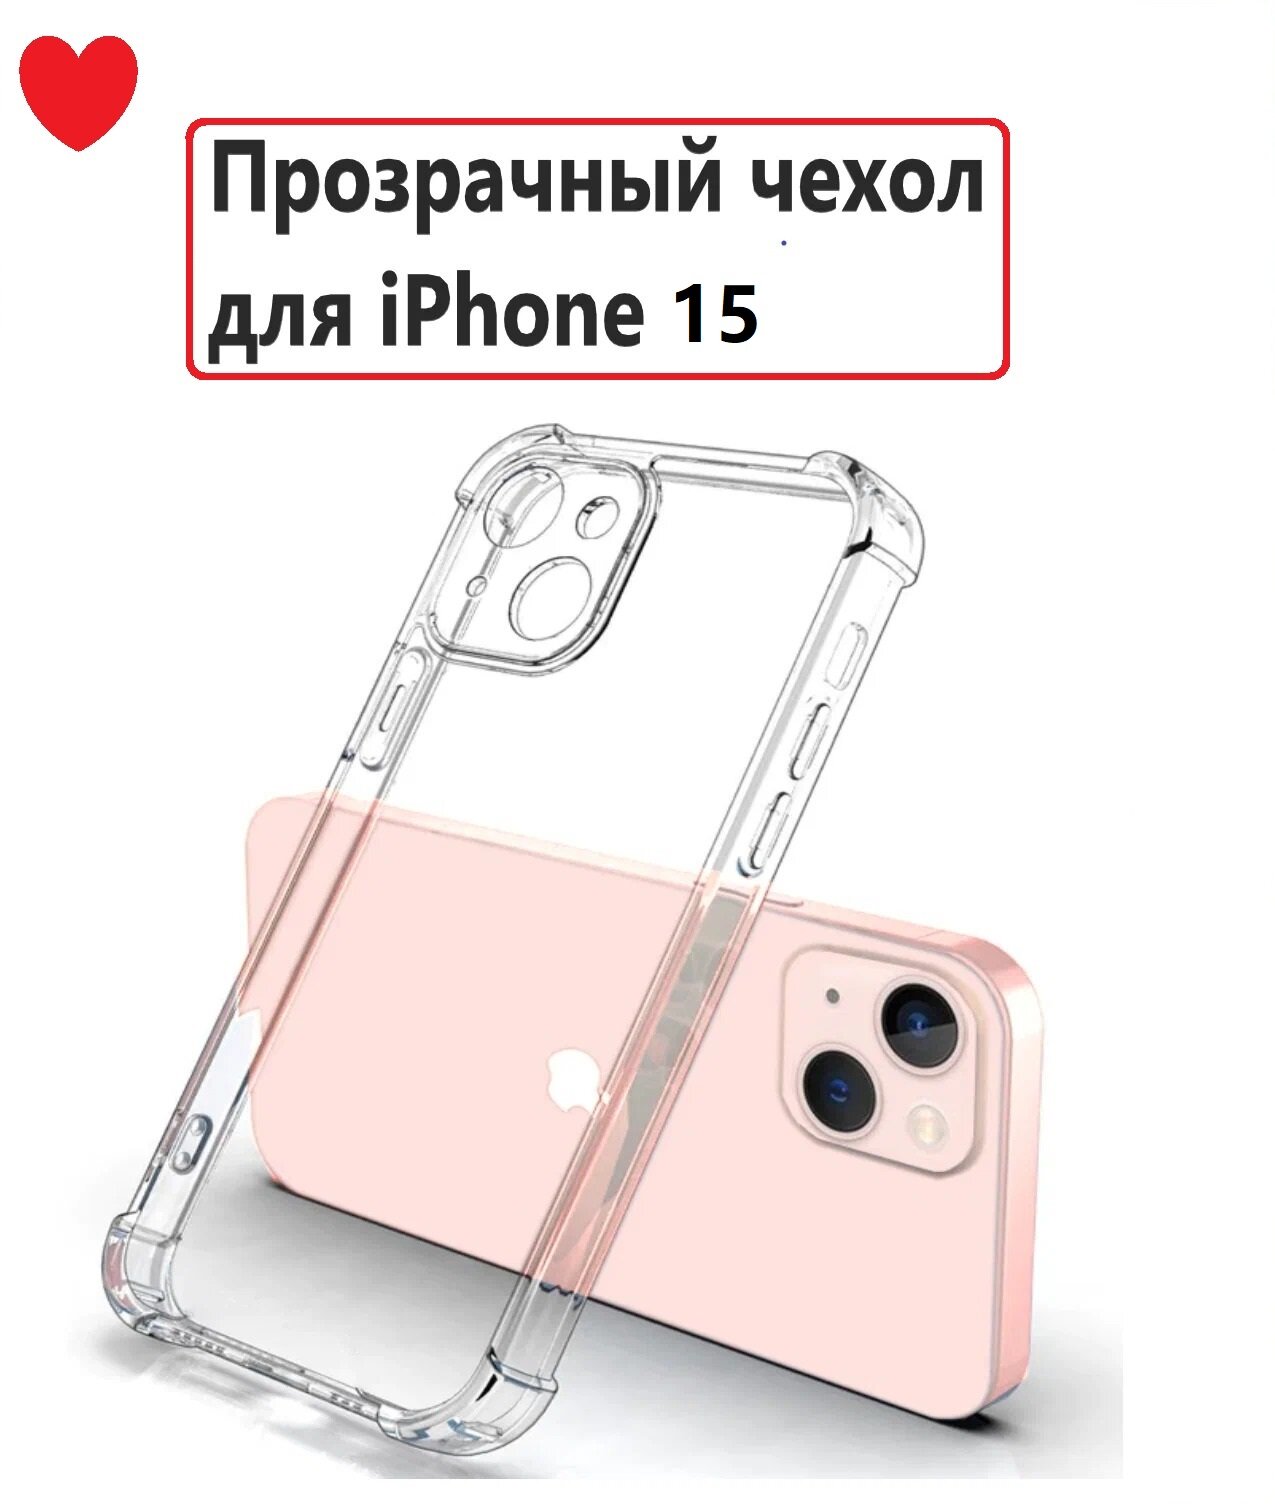 Чехол на Айфон 15 / Противоударный, силиконовый case для iPhone 15, прозрачный